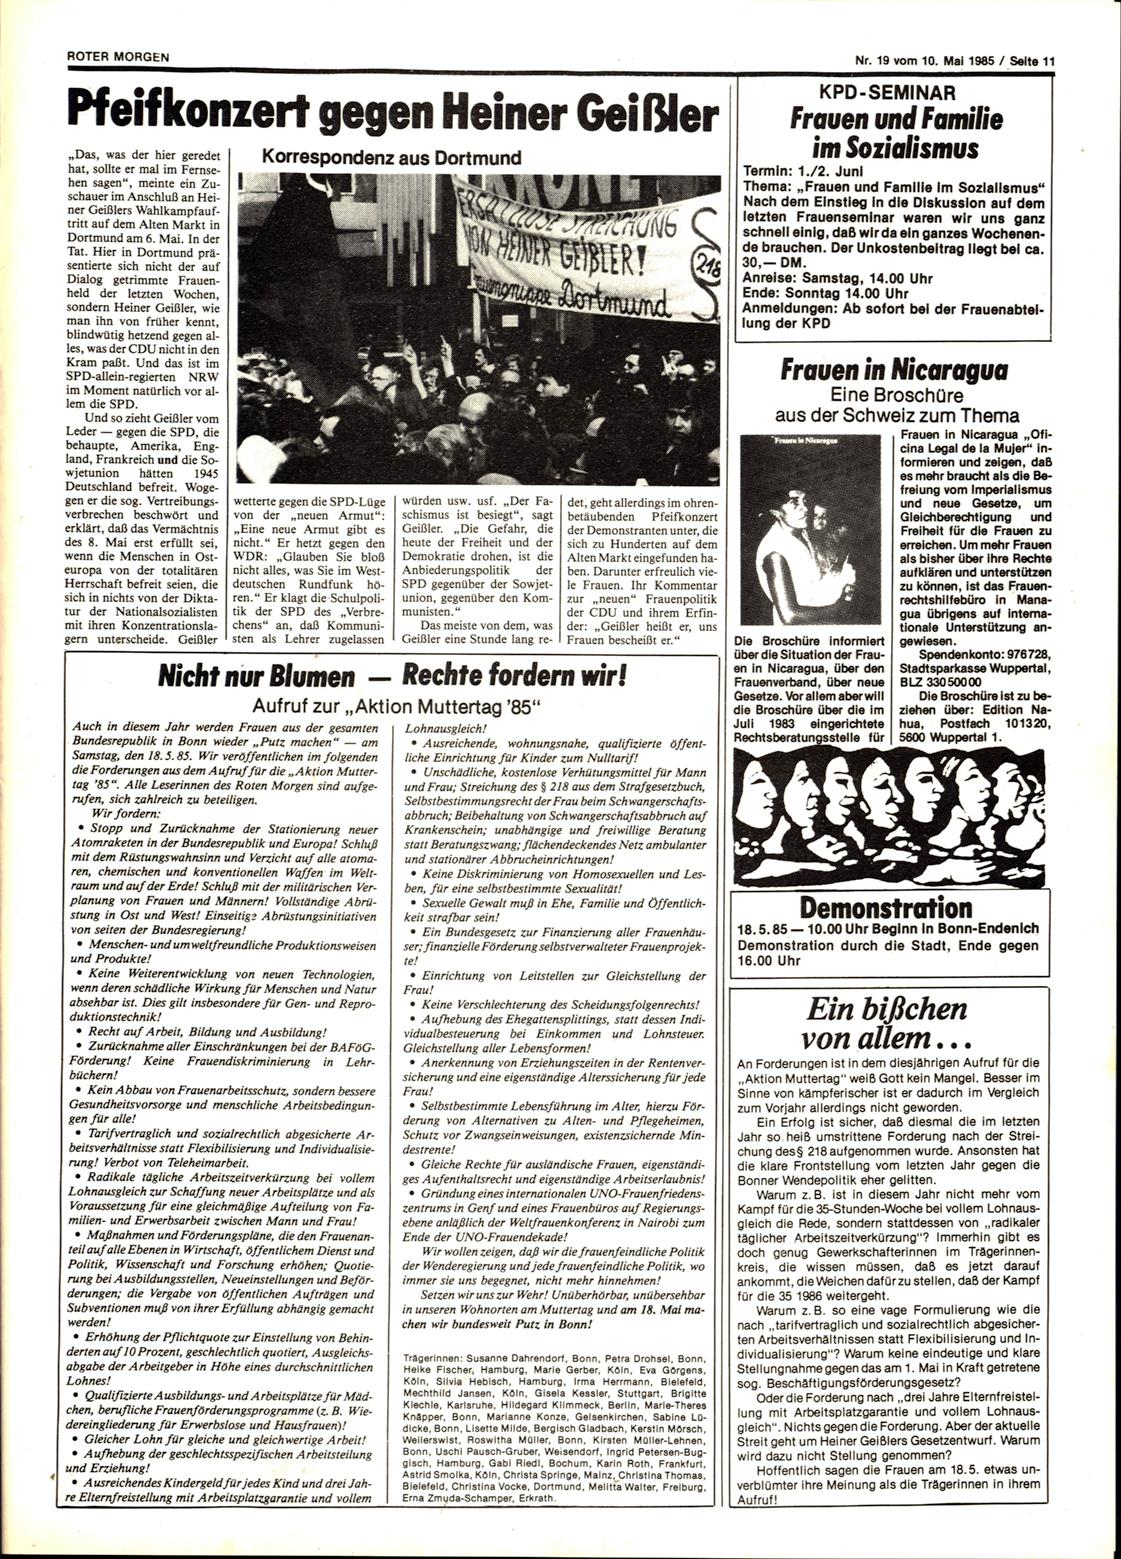 Roter Morgen, 19. Jg., 10. Mai 1985, Nr. 19, Seite 11